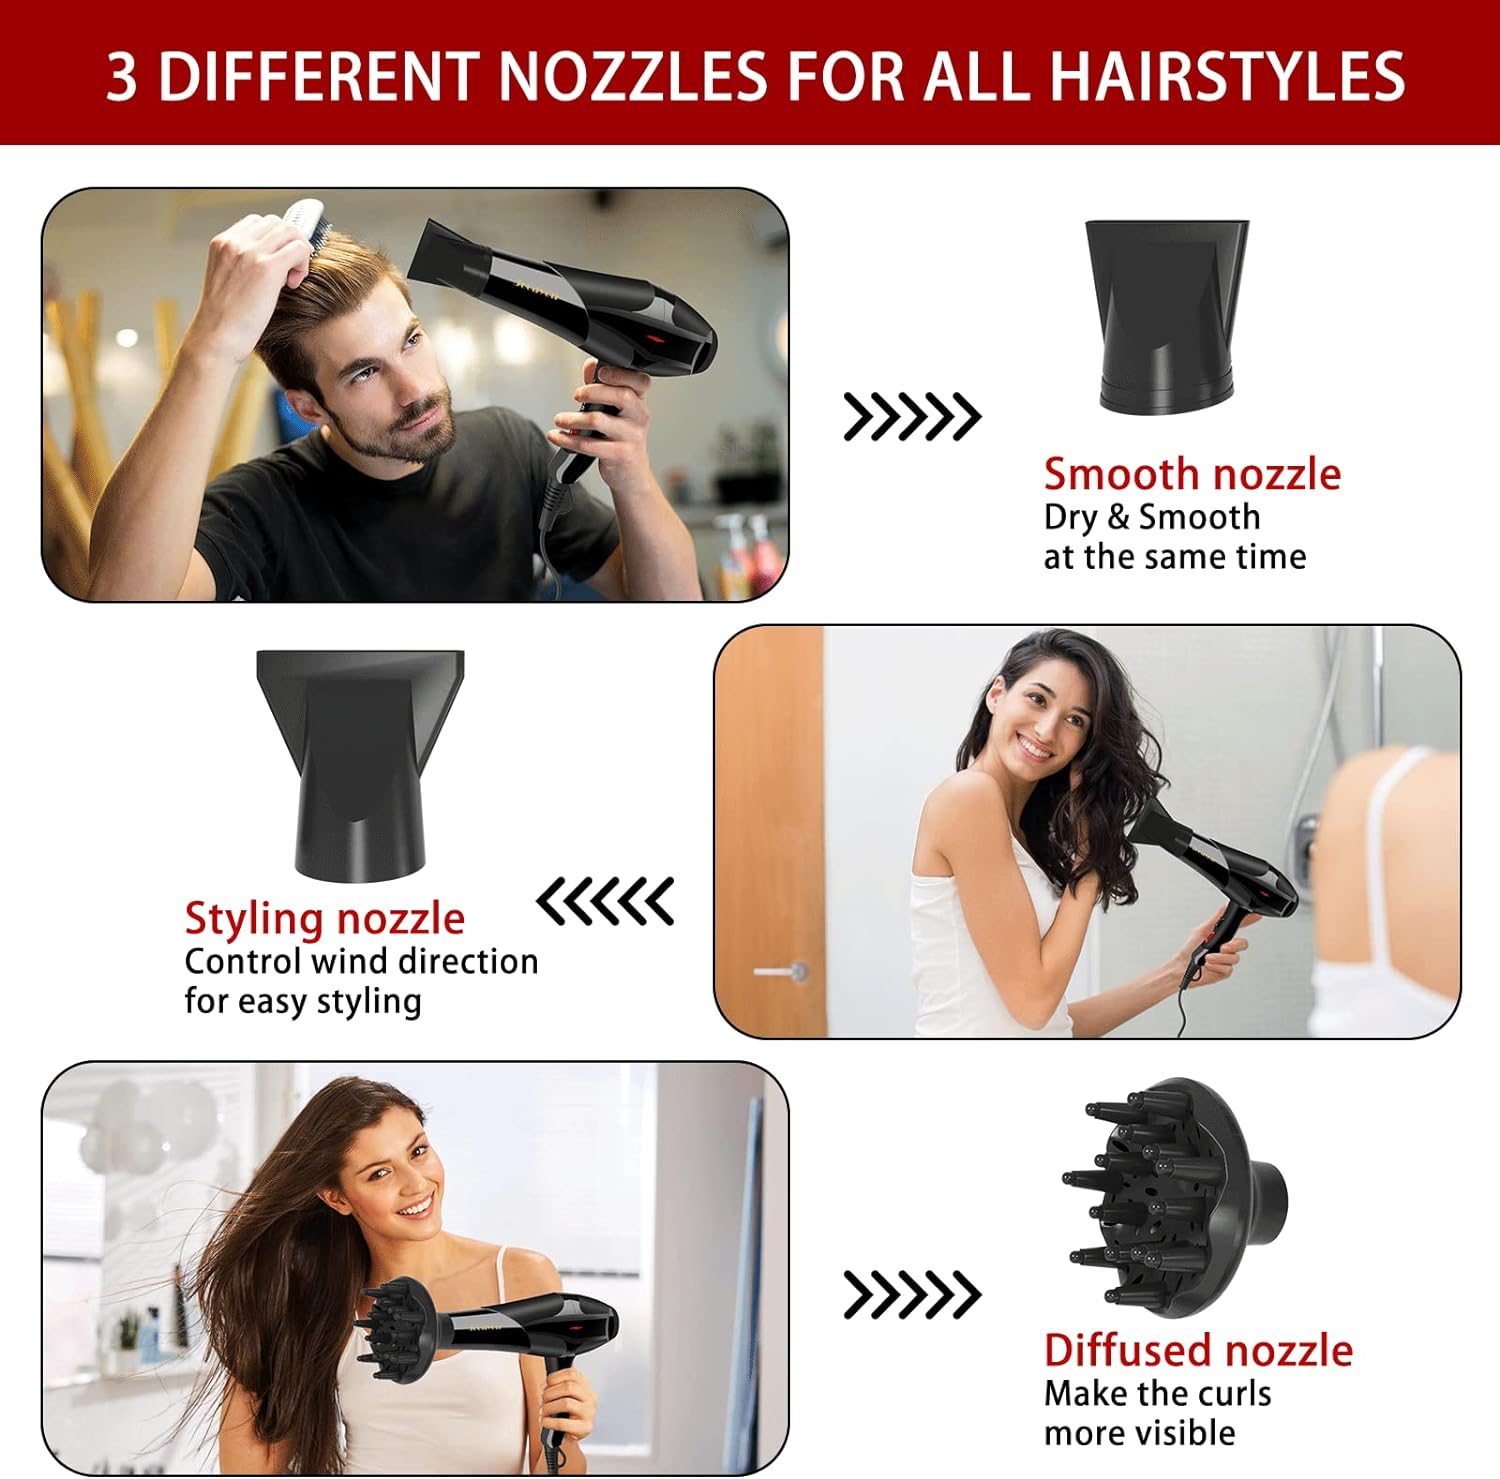 Secador de pelo, potente secadora de 3000 W con difusor, secador de pelo iónico